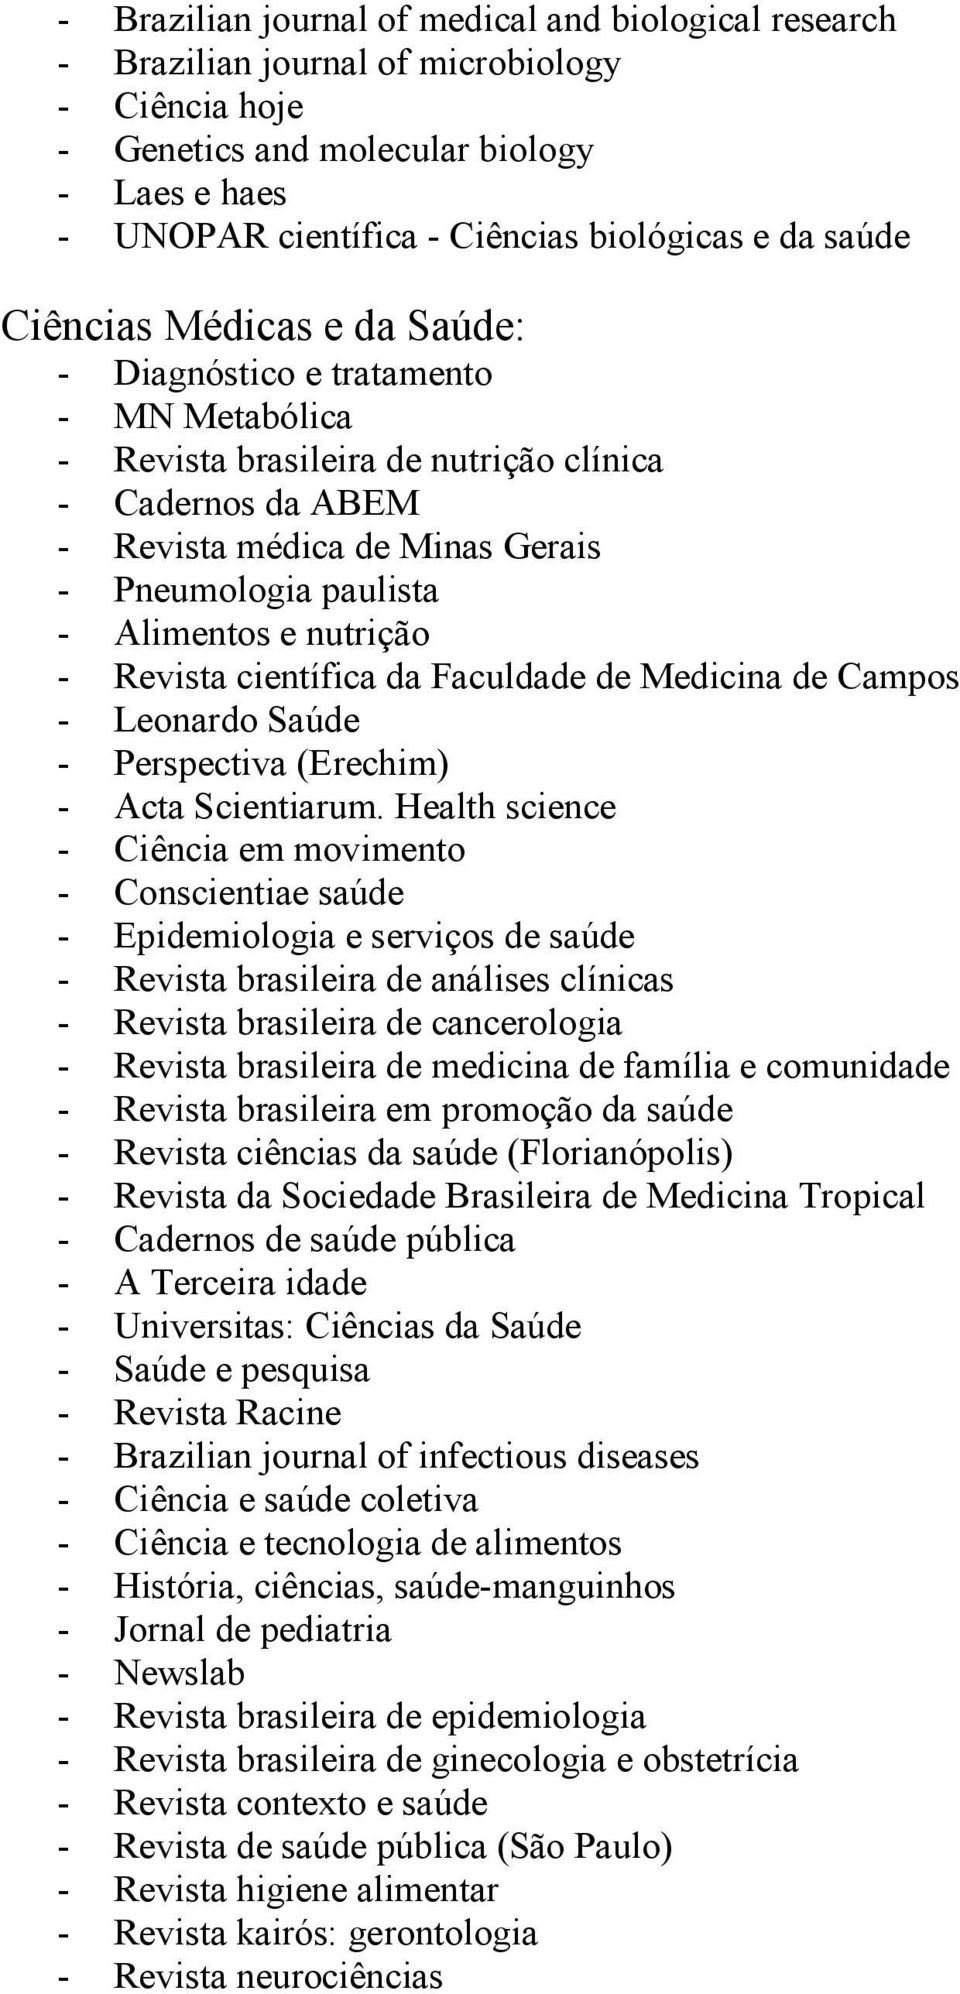 Alimentos e nutrição - Revista científica da Faculdade de Medicina de Campos - Leonardo Saúde - Perspectiva (Erechim) - Acta Scientiarum.